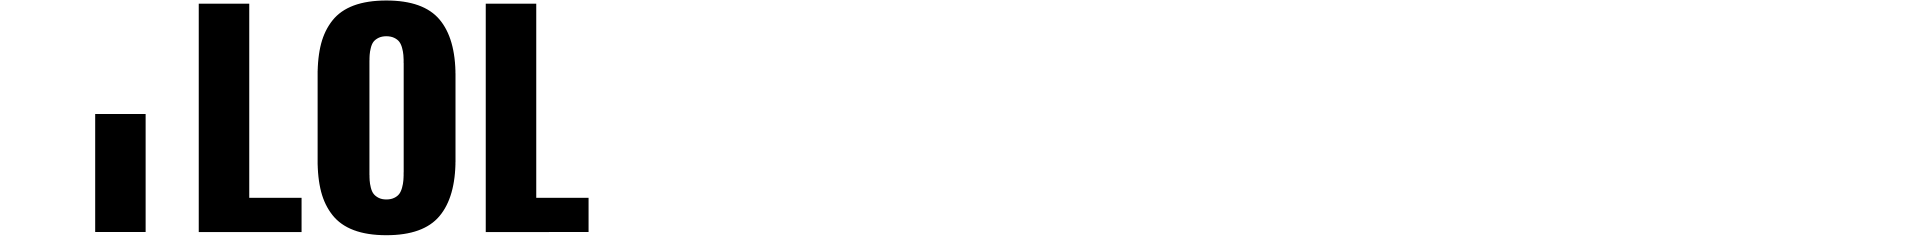 iLOL_logo